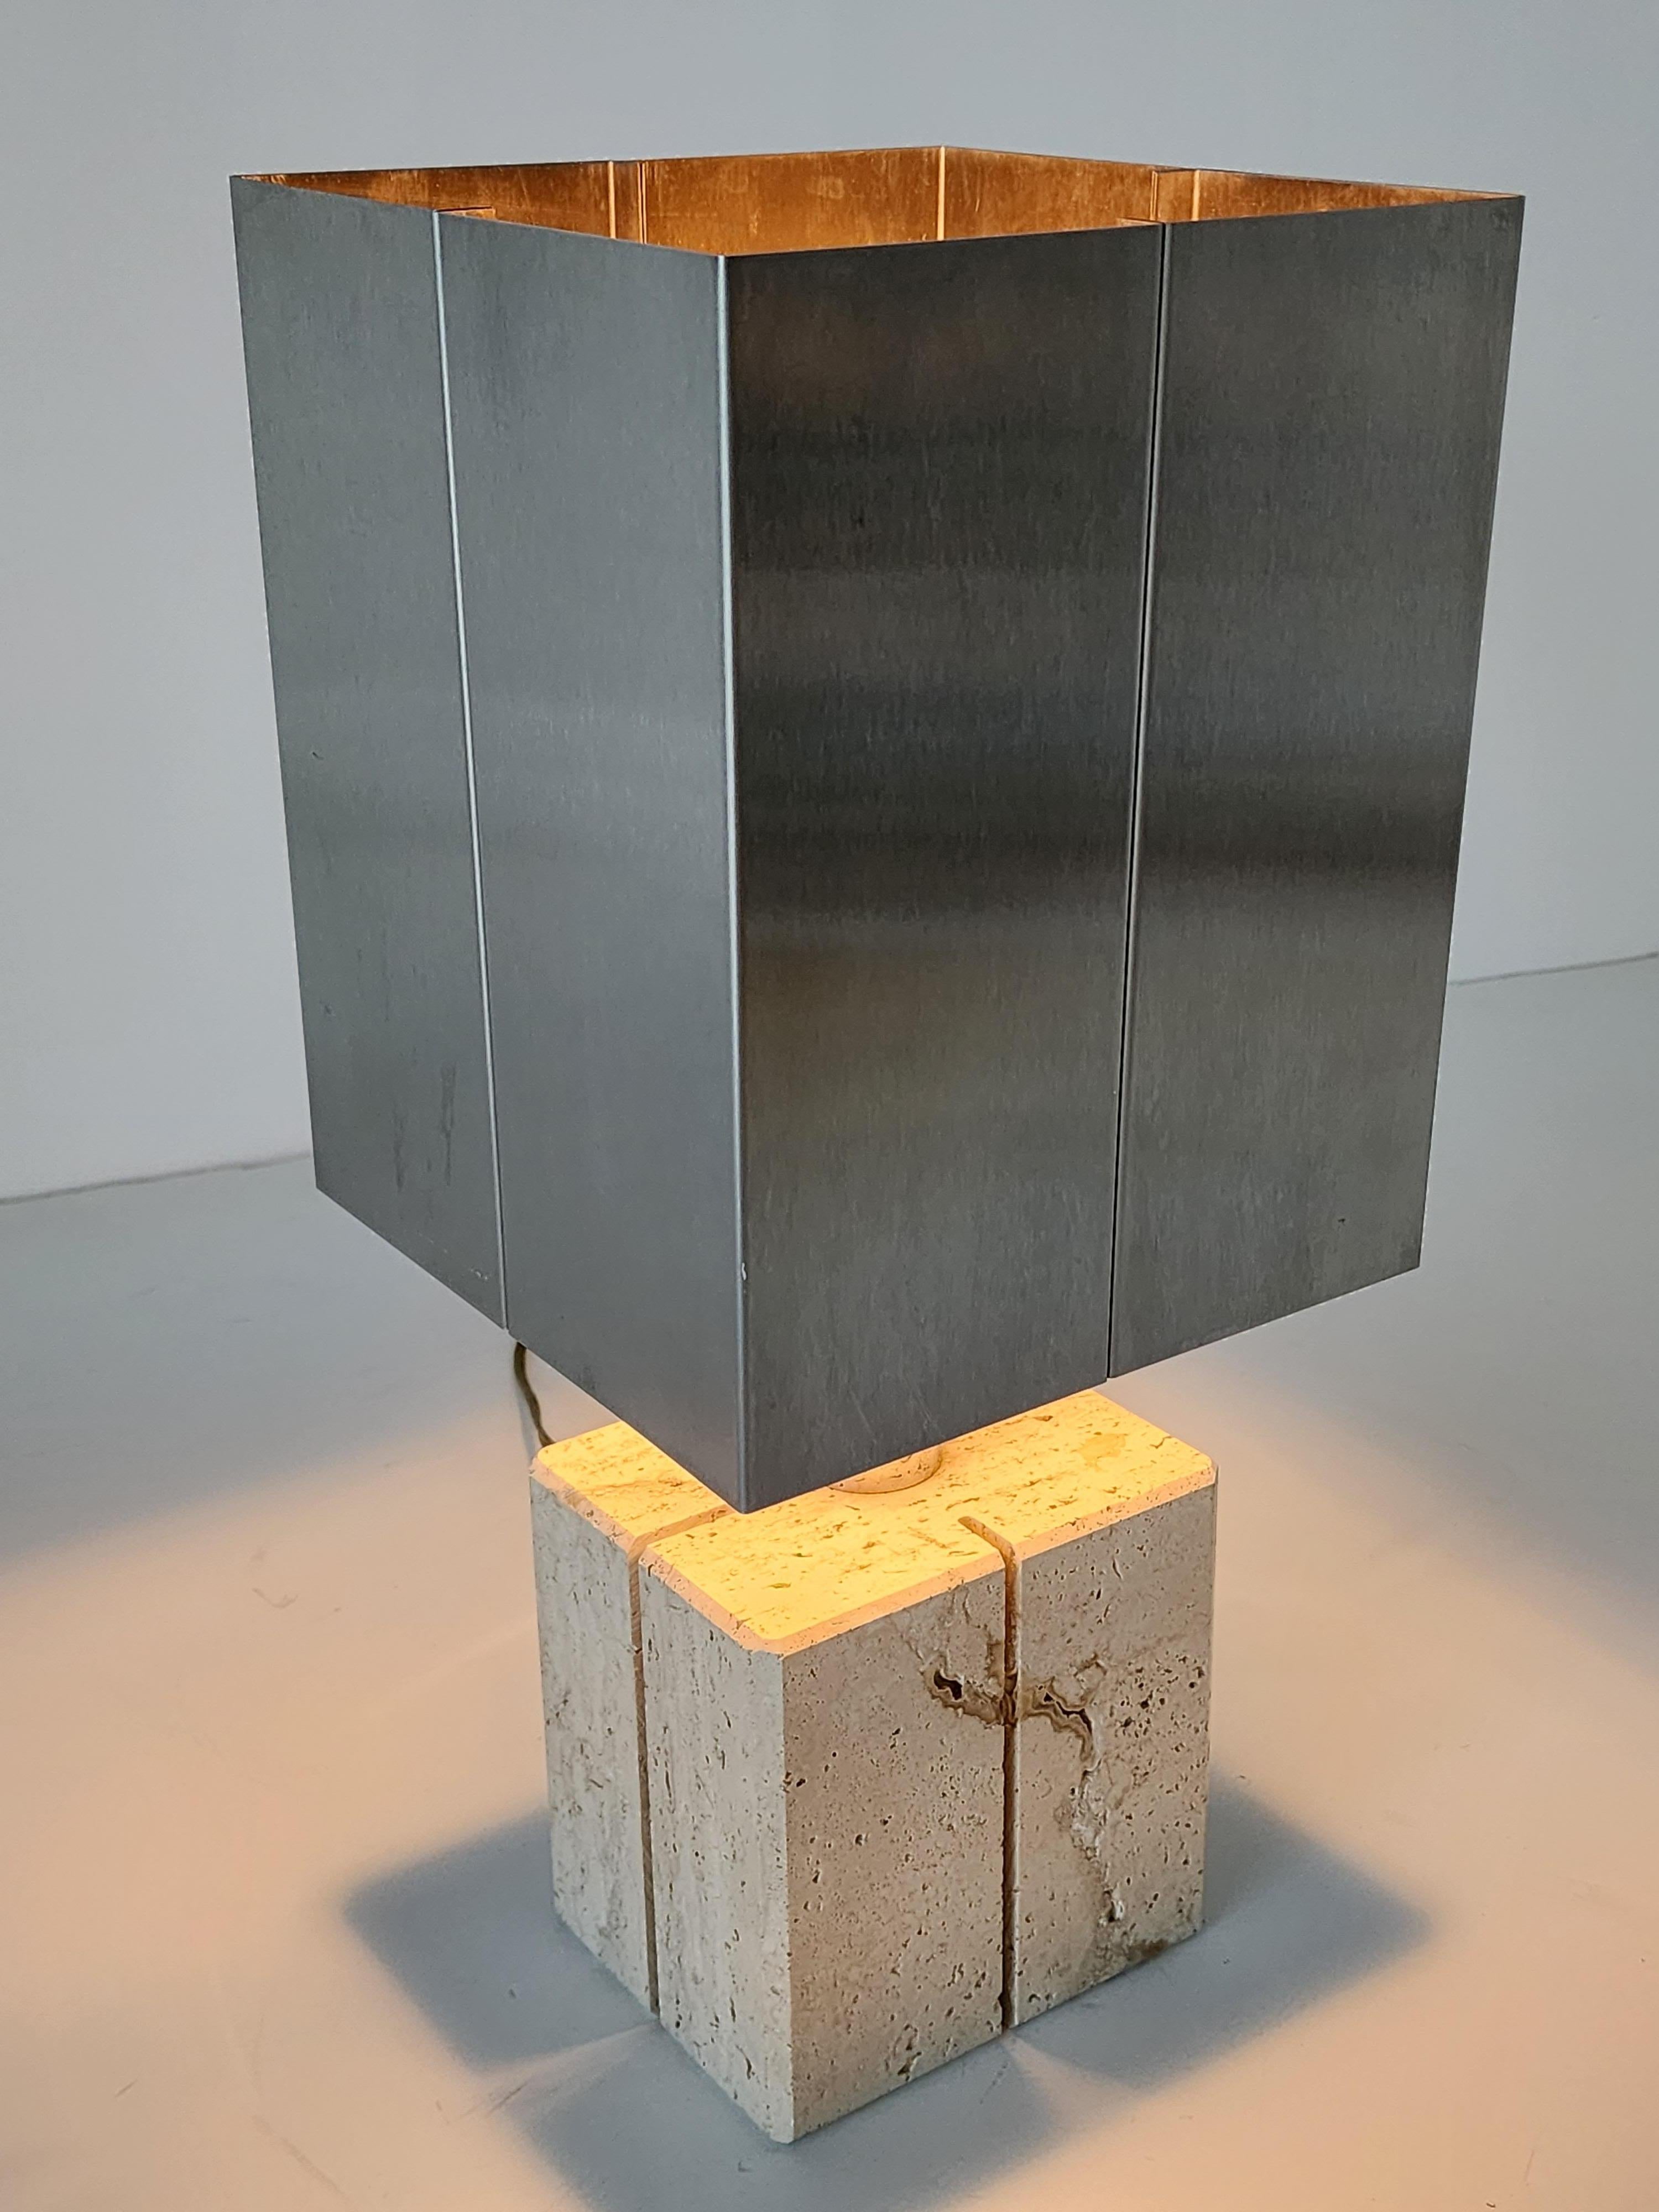 Lampe de table en travertin avec  Abat-jour en acier inoxydable de Reggiani Lighting , Italie .  

Contient une douille ordinaire de taille E26 d'une puissance de 60 watts. 

Interrupteur marche/arrêt sur la prise . 

La base en travertin mesure 6